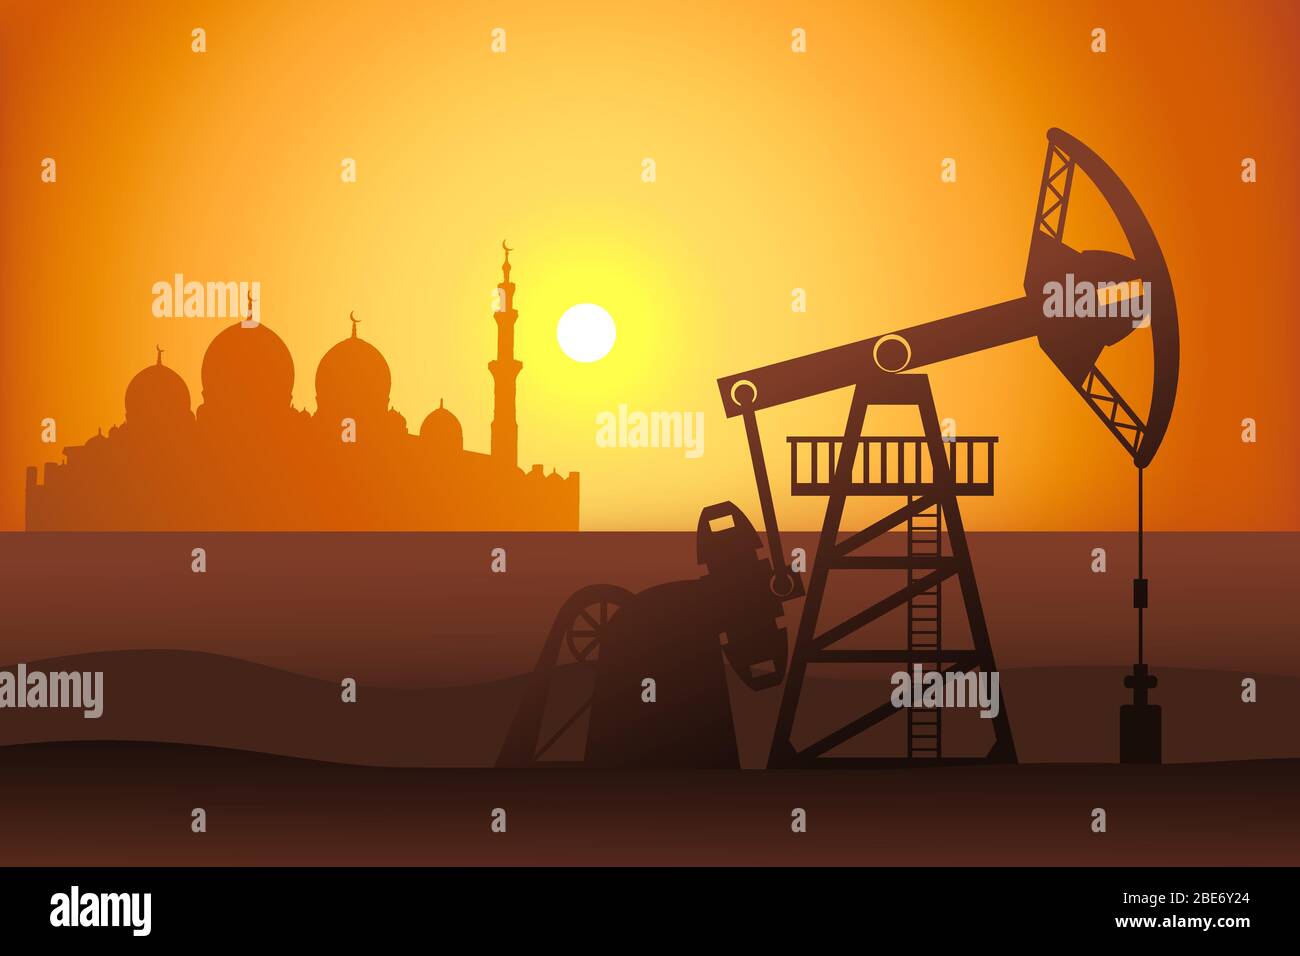 Petroleum Pumpjack und Moschee Silhouette Vektor-Illustration. Ölbrunnen in der arabischen Wüste. Stock Vektor